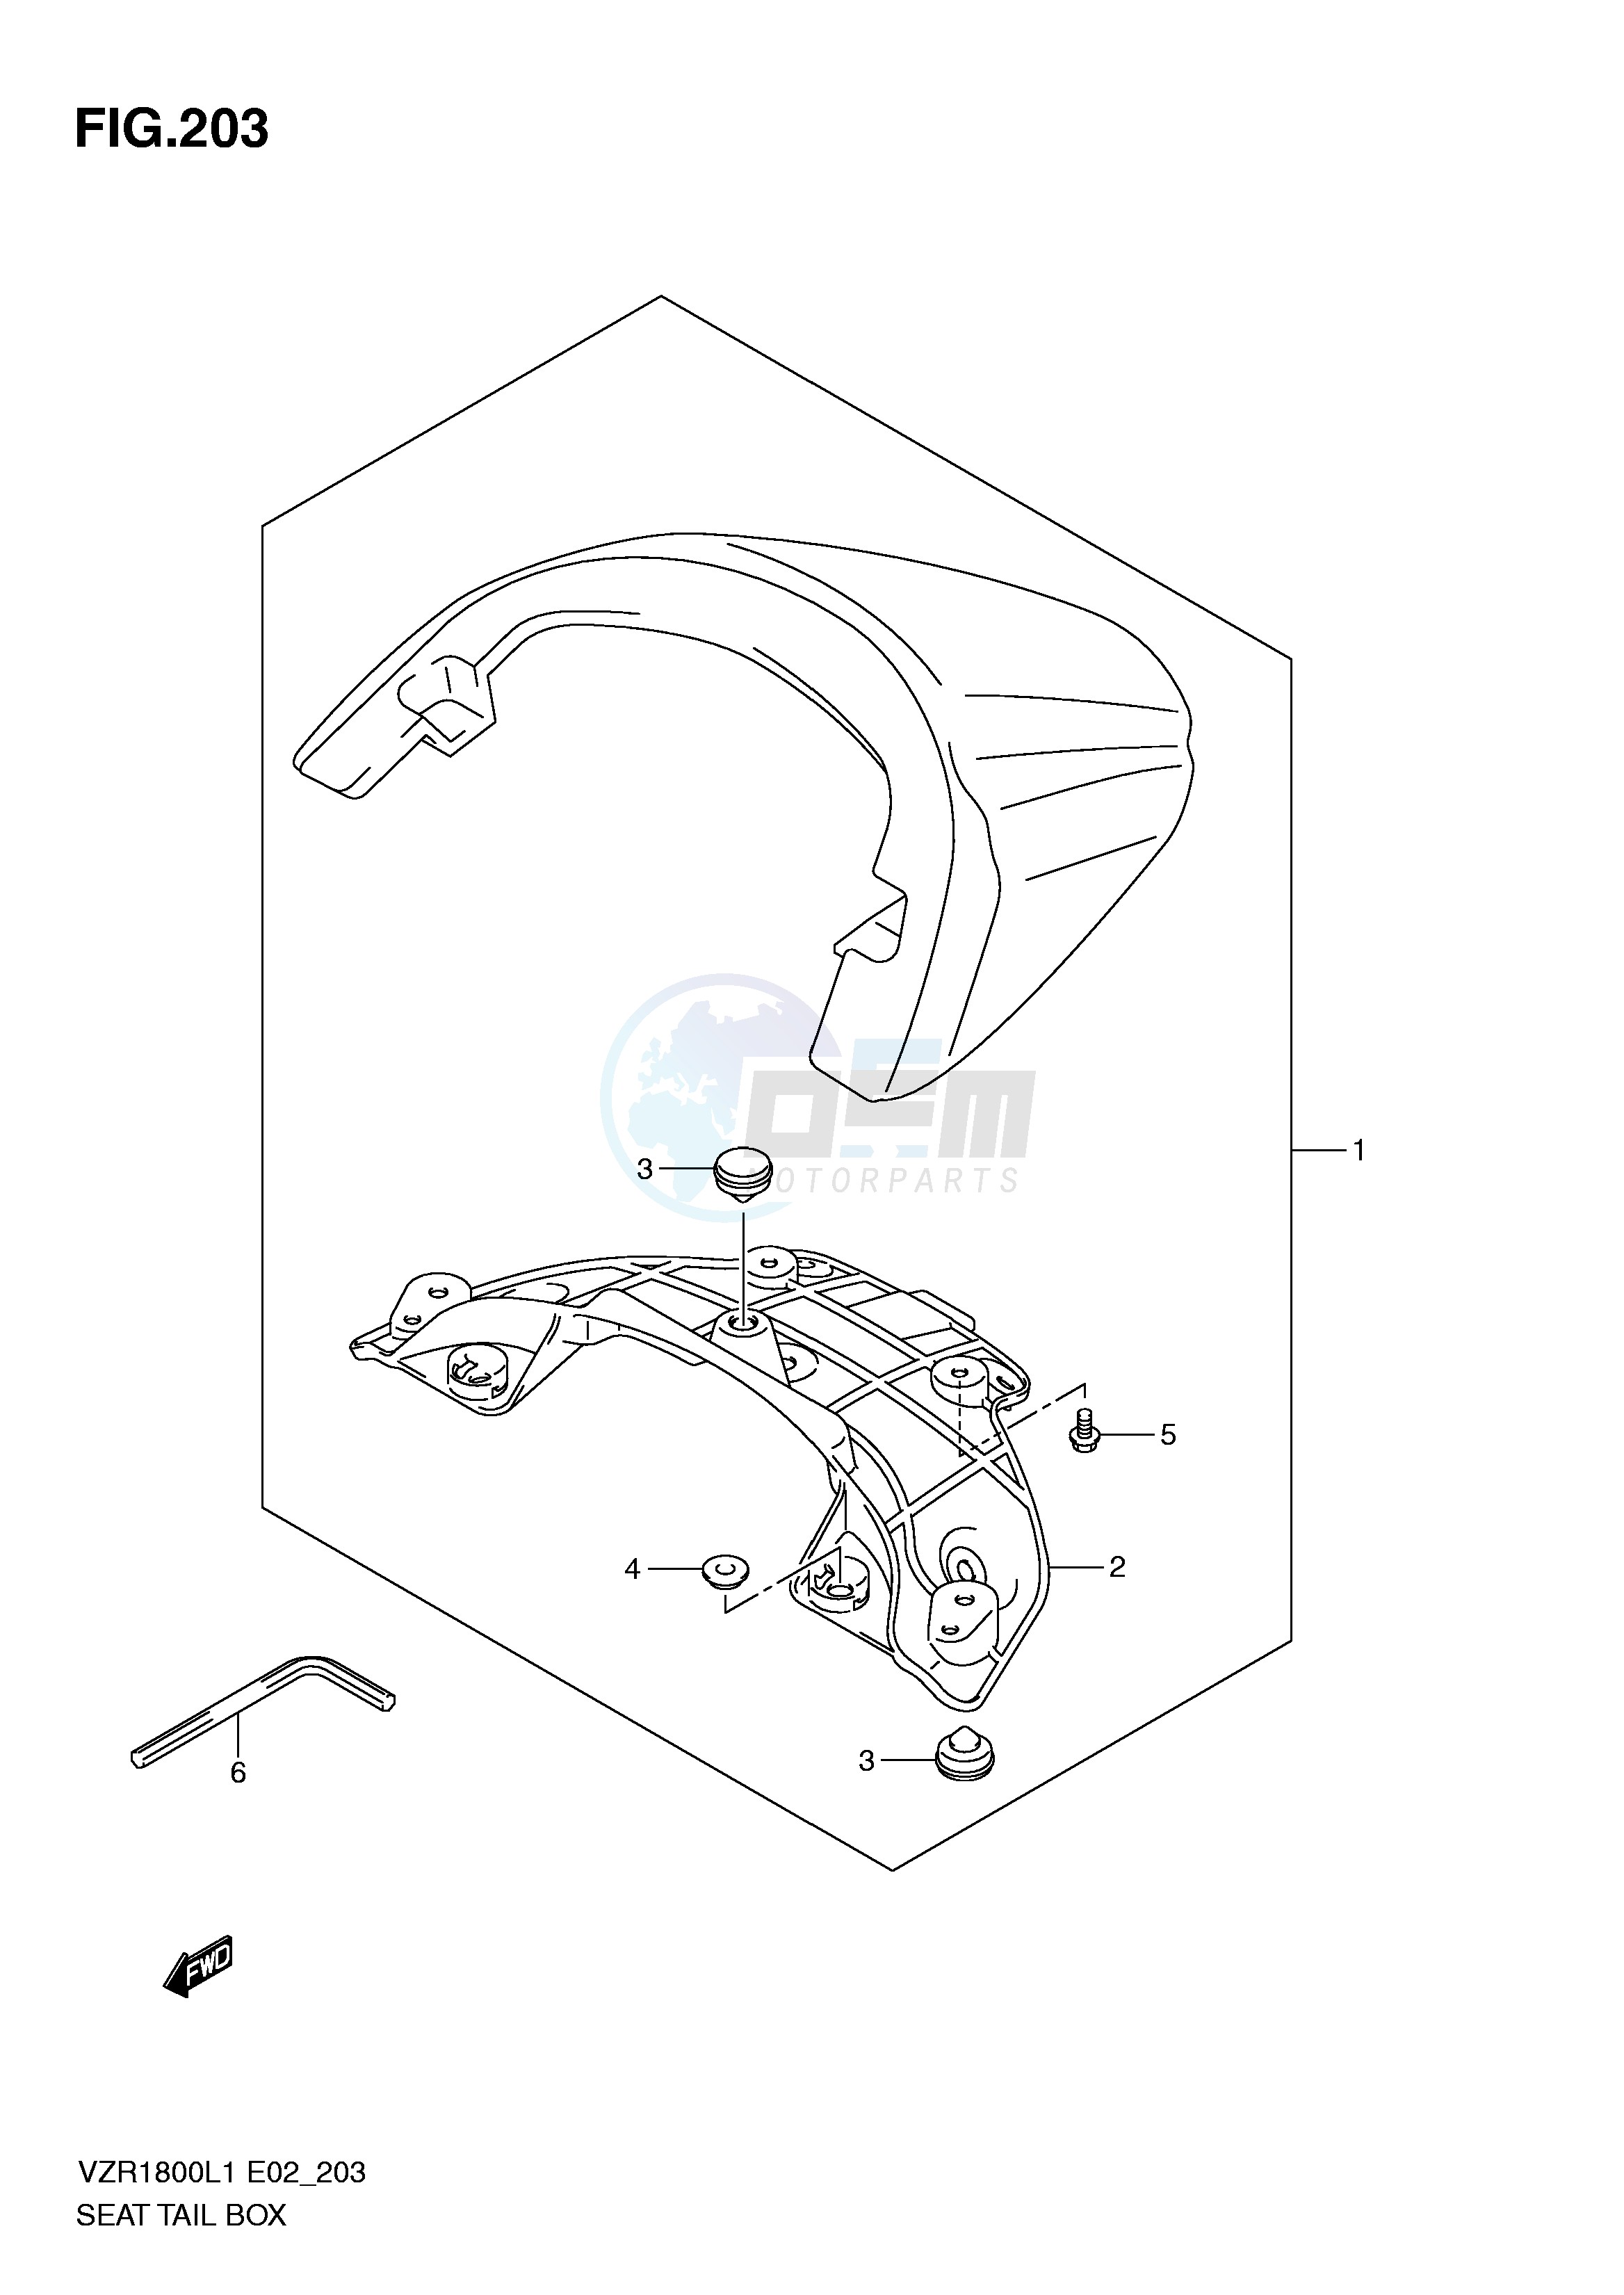 SEAT TAIL BOX (VZR1800L1 E24) blueprint